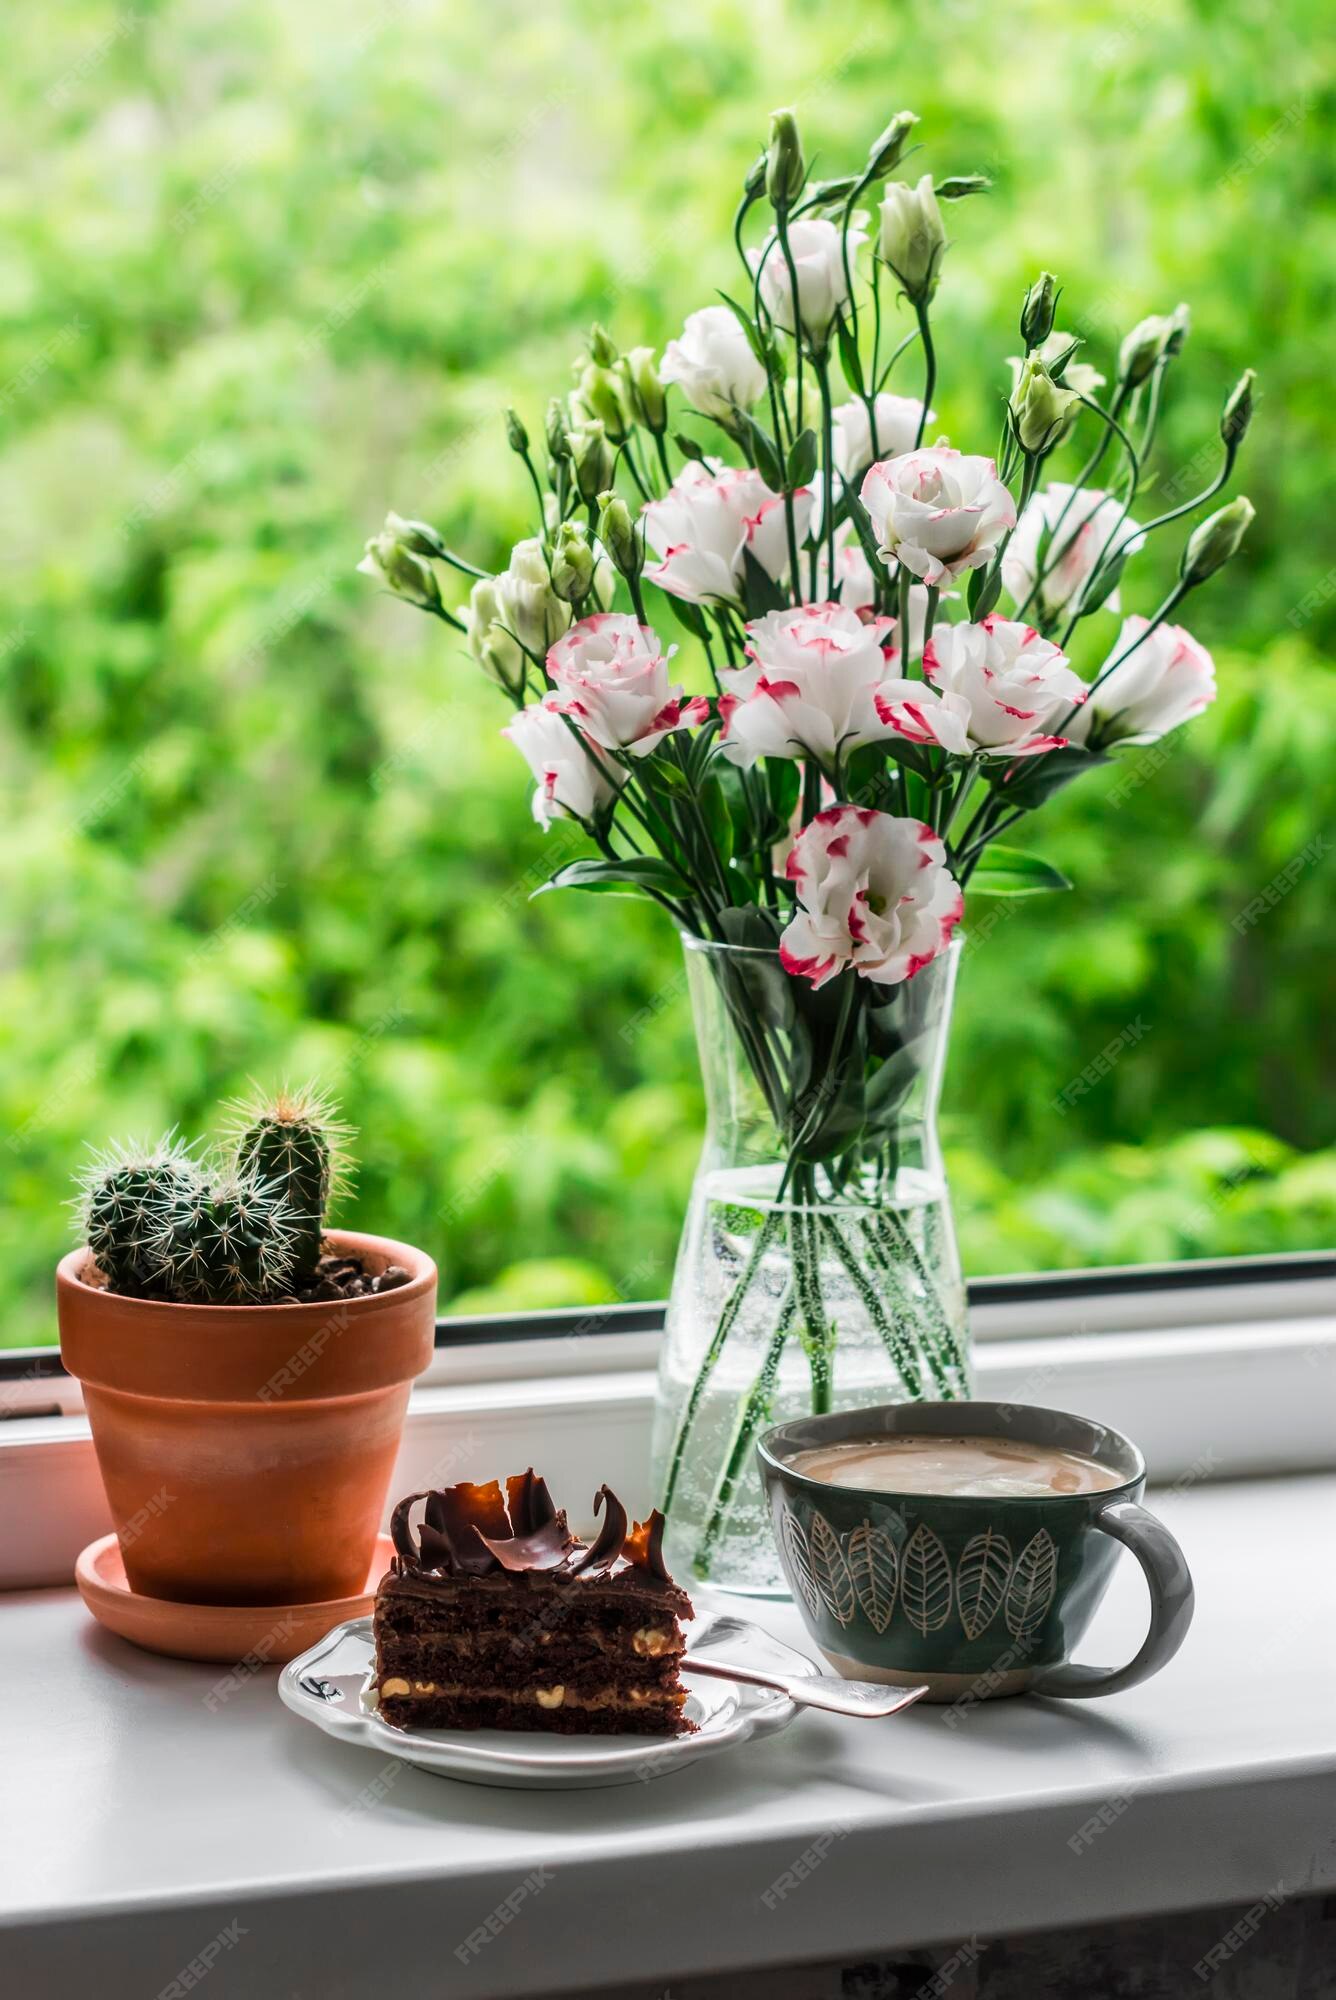 Bodegón acogedor un trozo de pastel de chocolate café un ramo de flores en  la ventana contra el fondo del jardín | Foto Premium